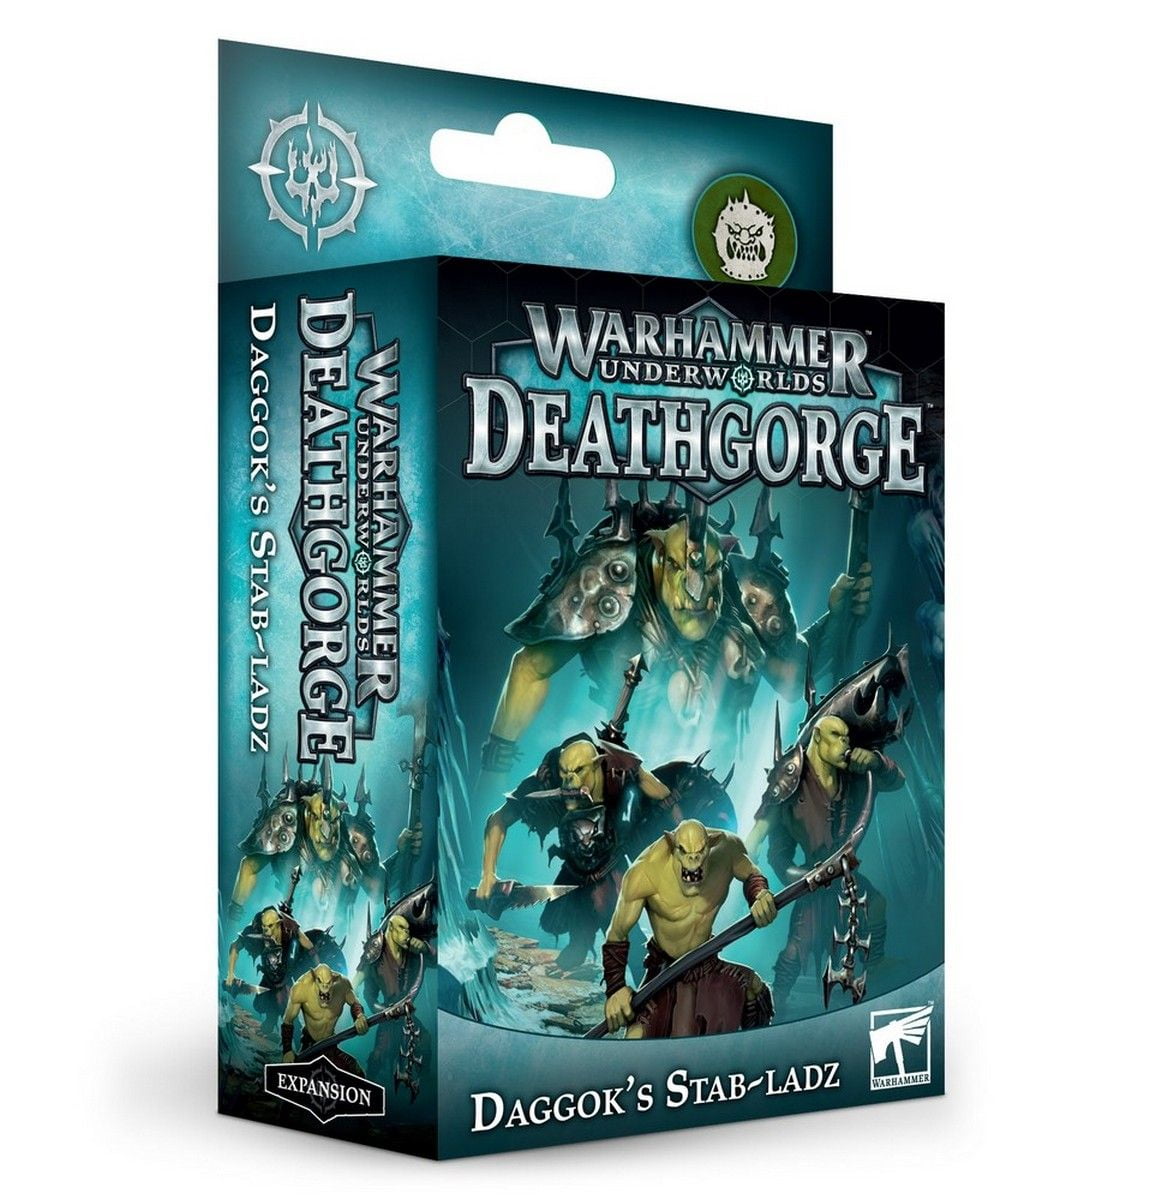 Warhammer Underworlds: Daggok's Stab-Ladz - French